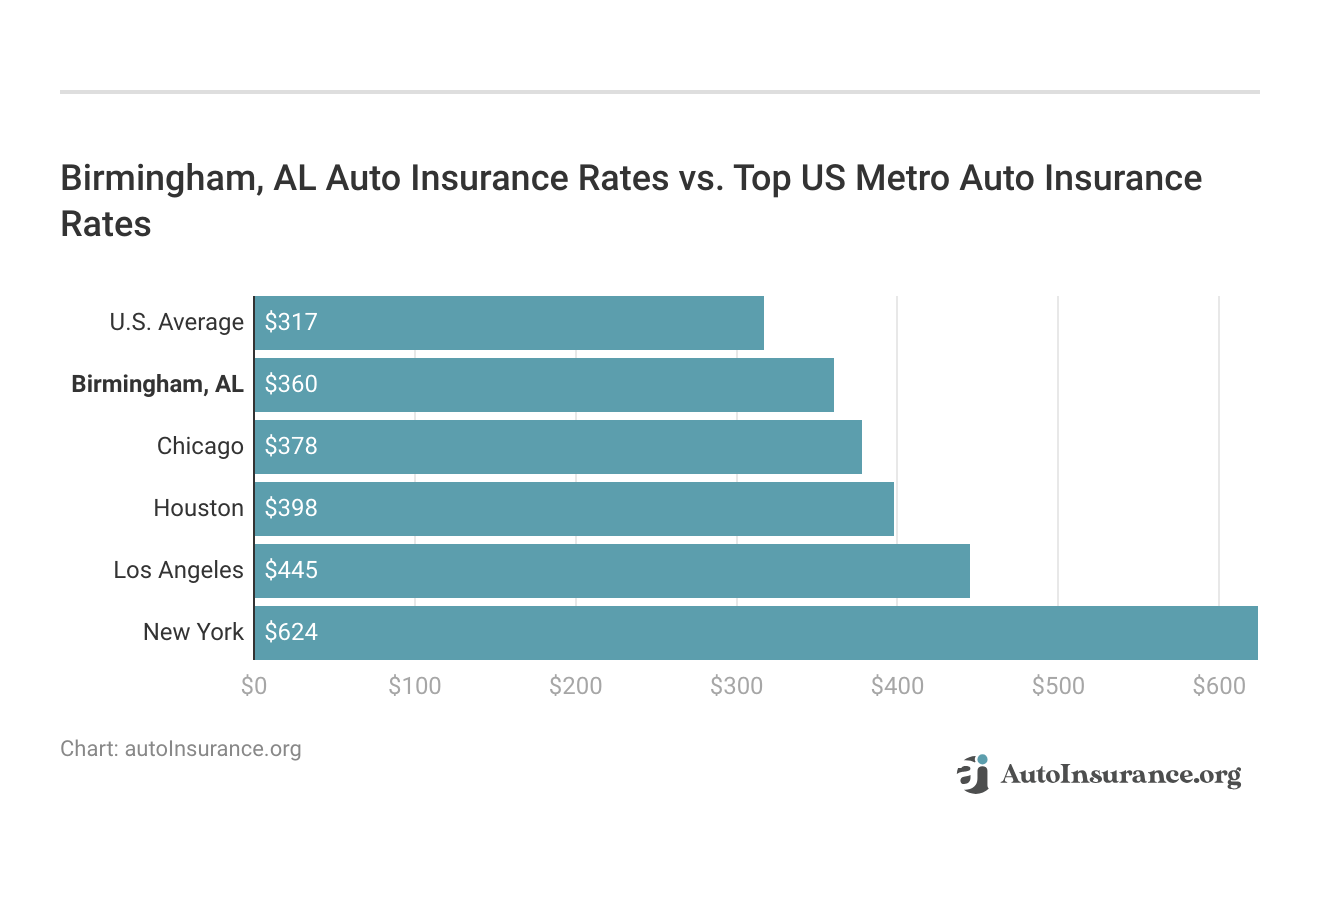 <h3>Birmingham, AL Auto Insurance Rates vs. Top US Metro Auto Insurance Rates</h3>